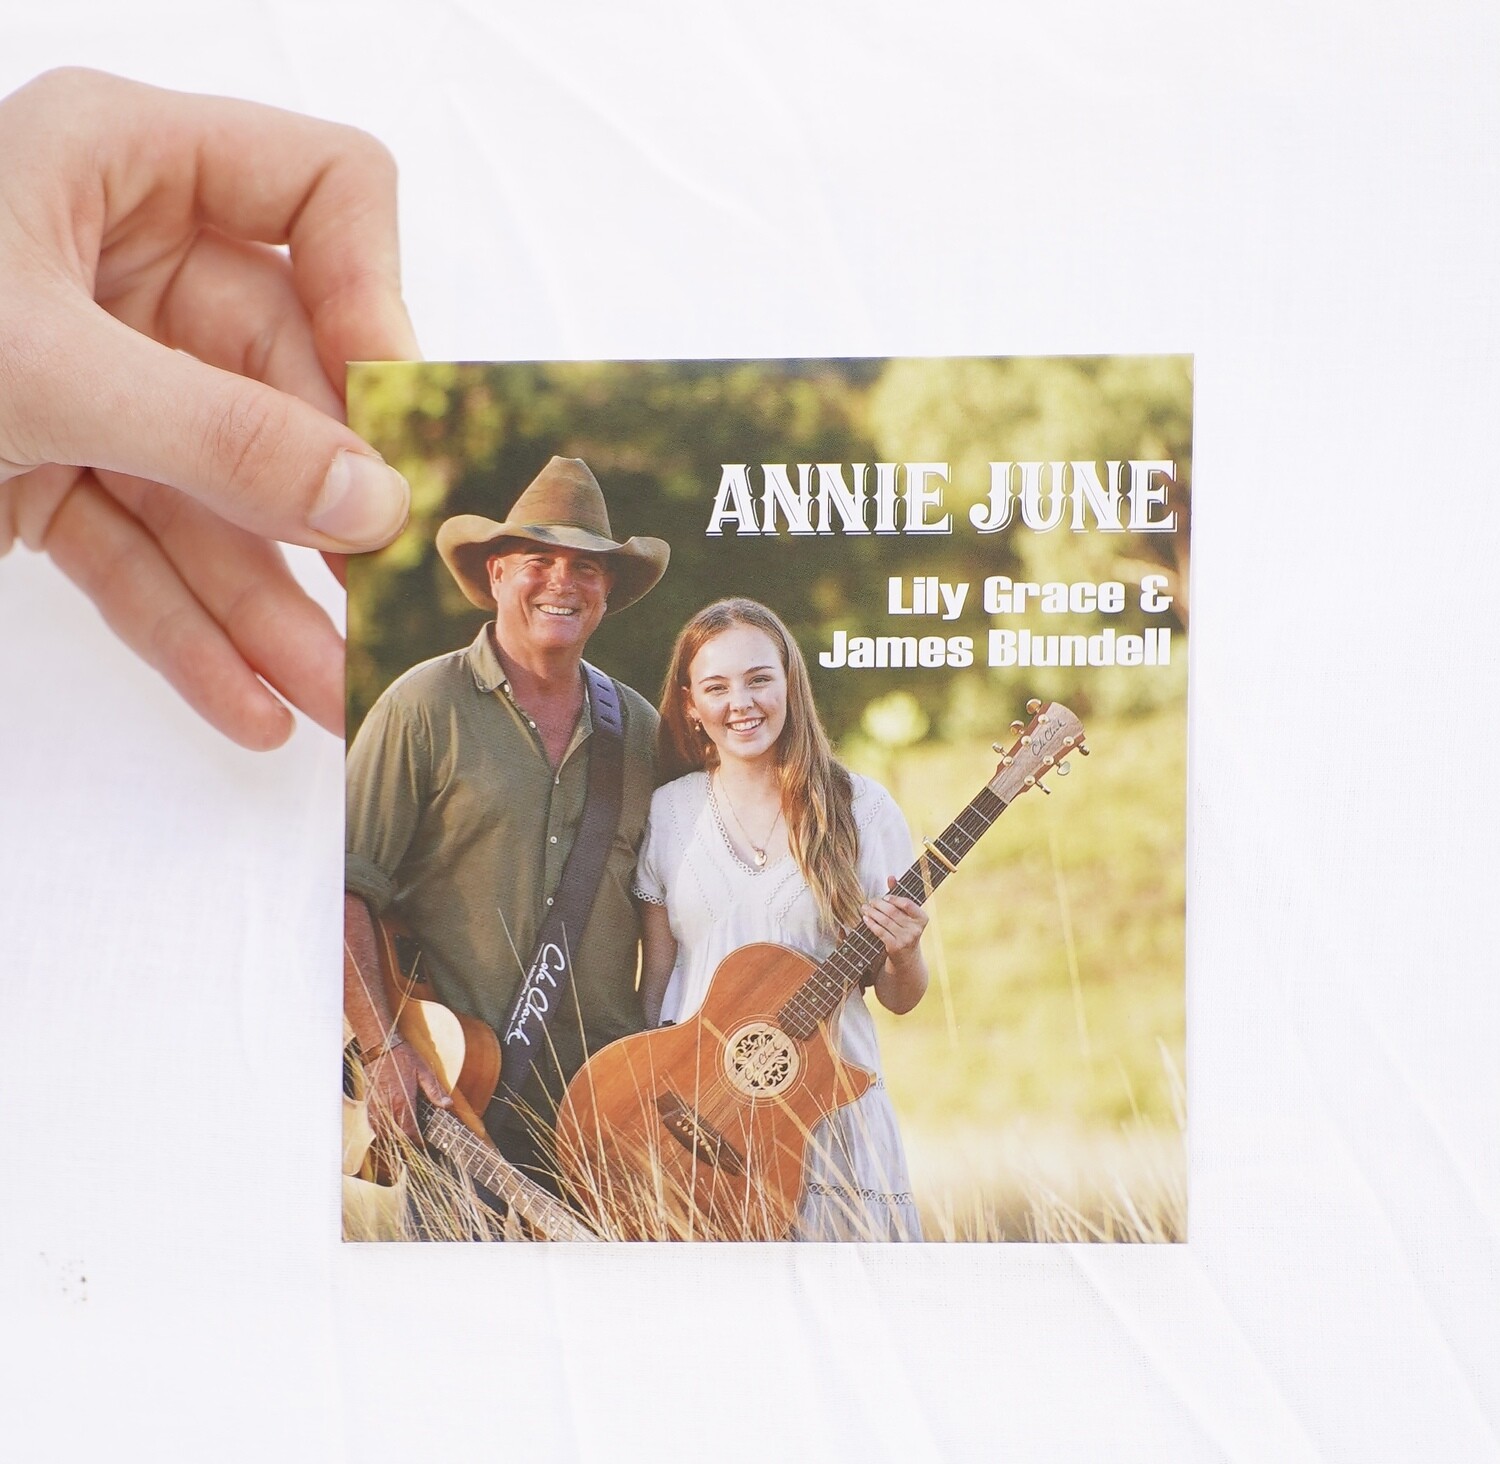 Annie June CD - OVERSEAS orders